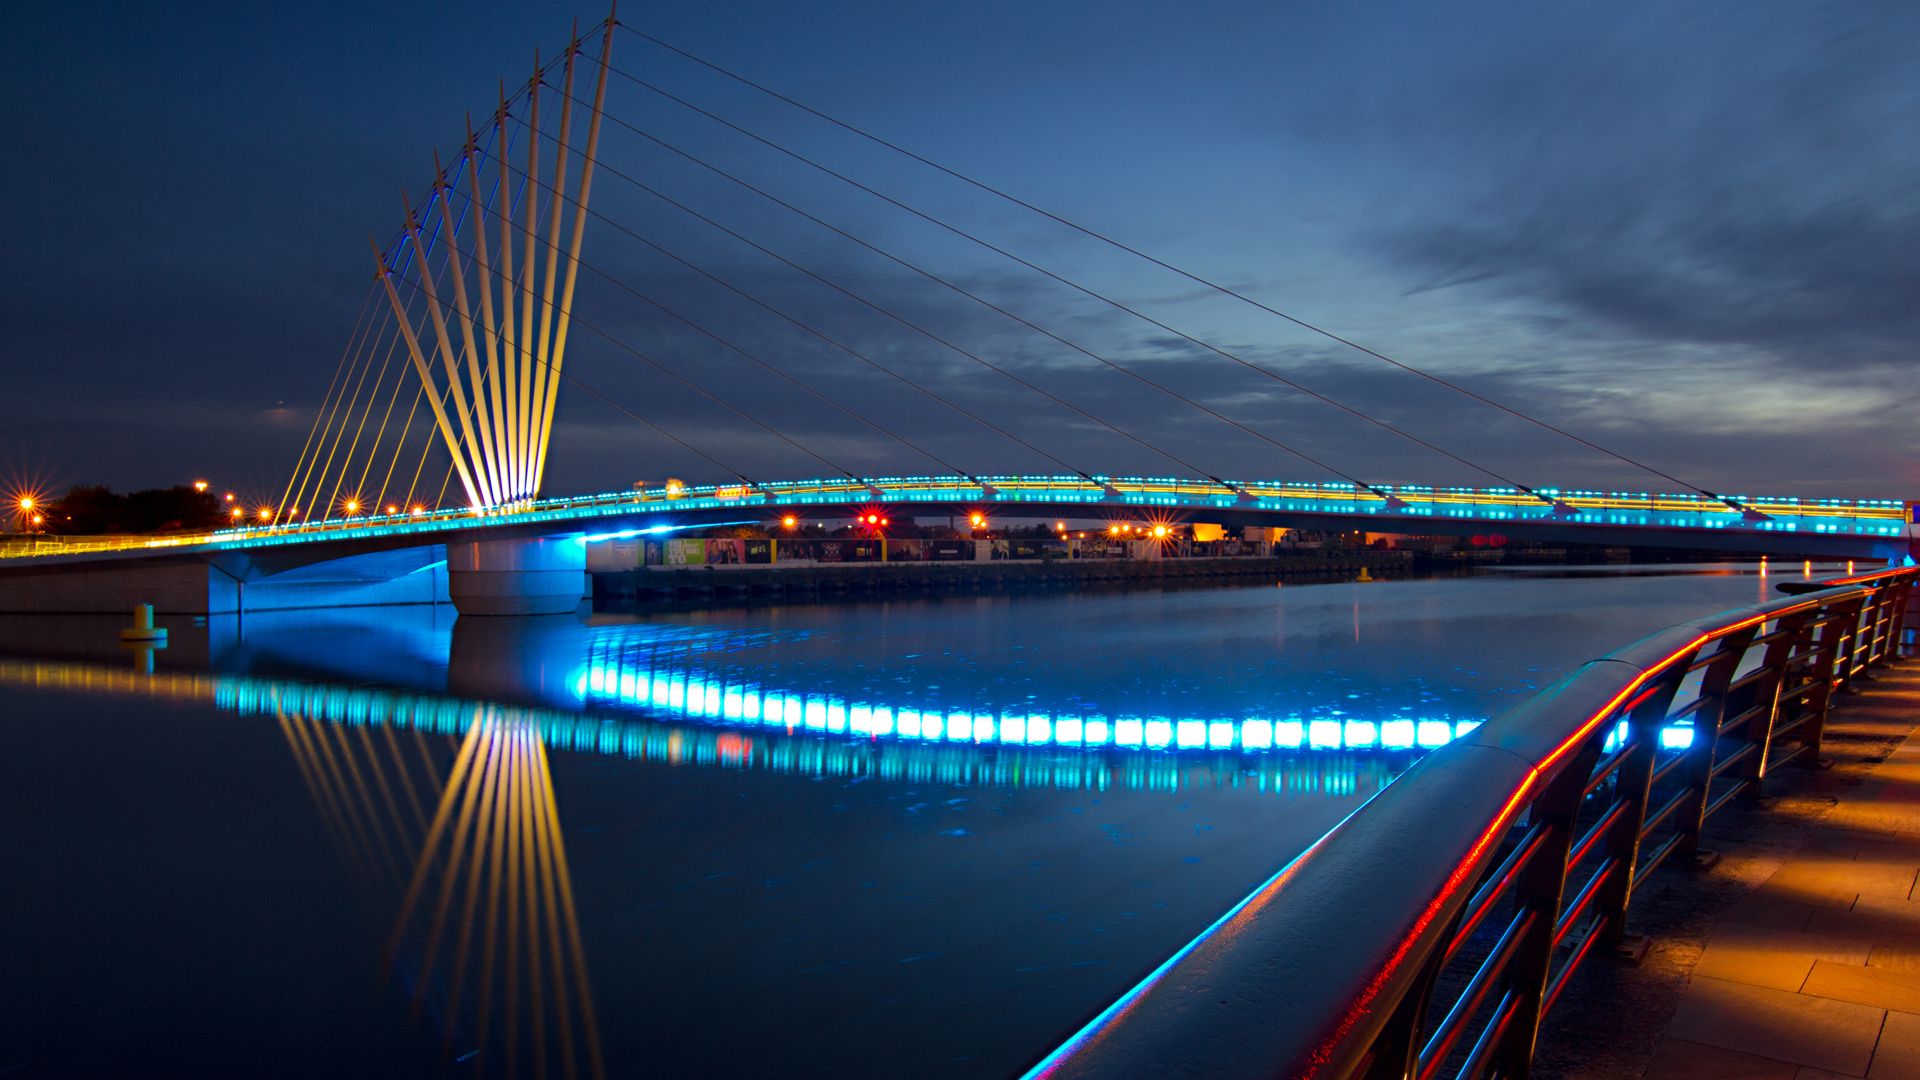 ingegneria civile wallpaper hd,ponte strallato,ponte,blu,notte,collegamento fisso